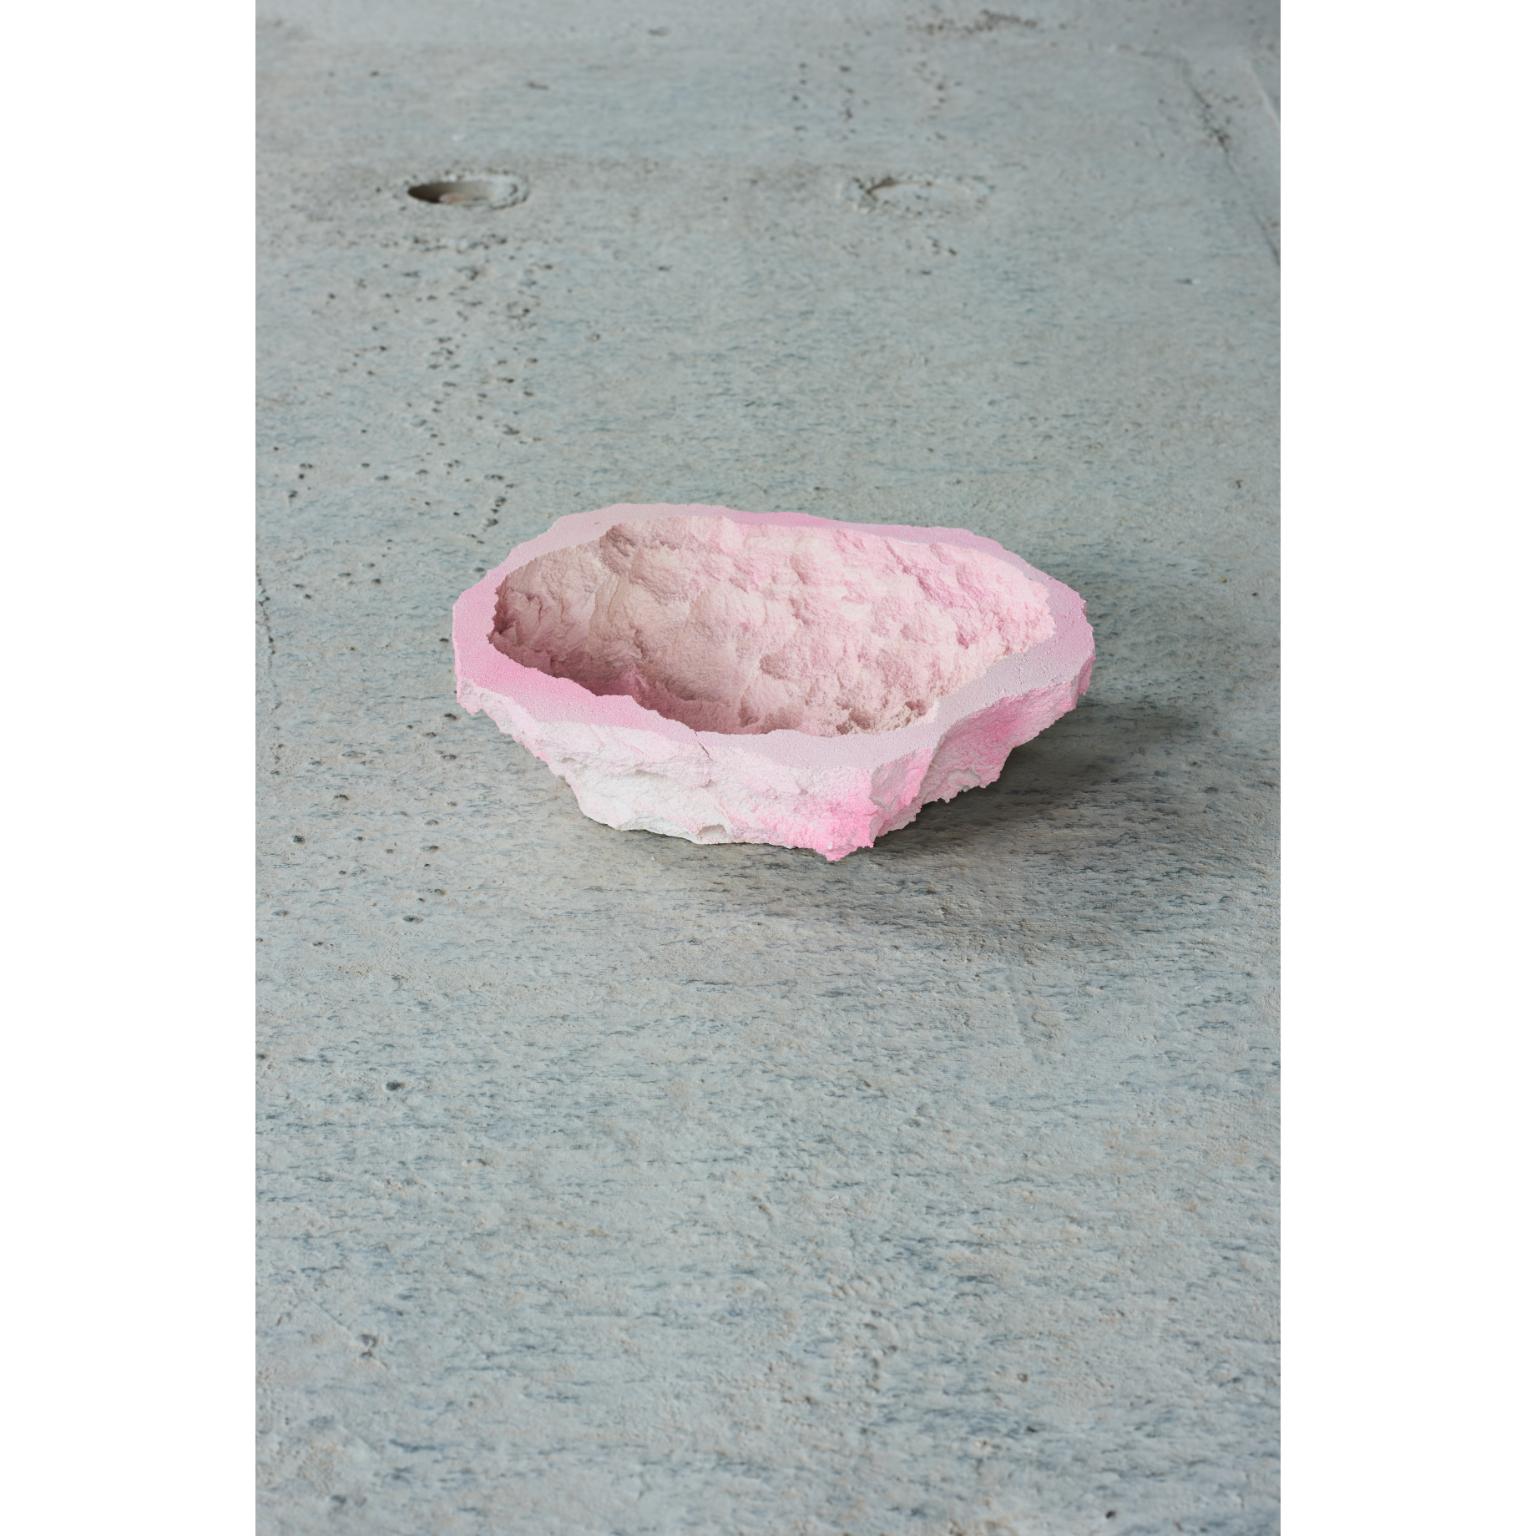 Bol en cristal pour étang par Andredottir & Bobek
Dimensions : L 11 x H 30 cm
MATERIAL : mousse/matelas réutilisés et durcisseur Jesmontite dans la couleur Pink Fade.

Artificial Nature est une collaboration entre le duo d'artistes et de